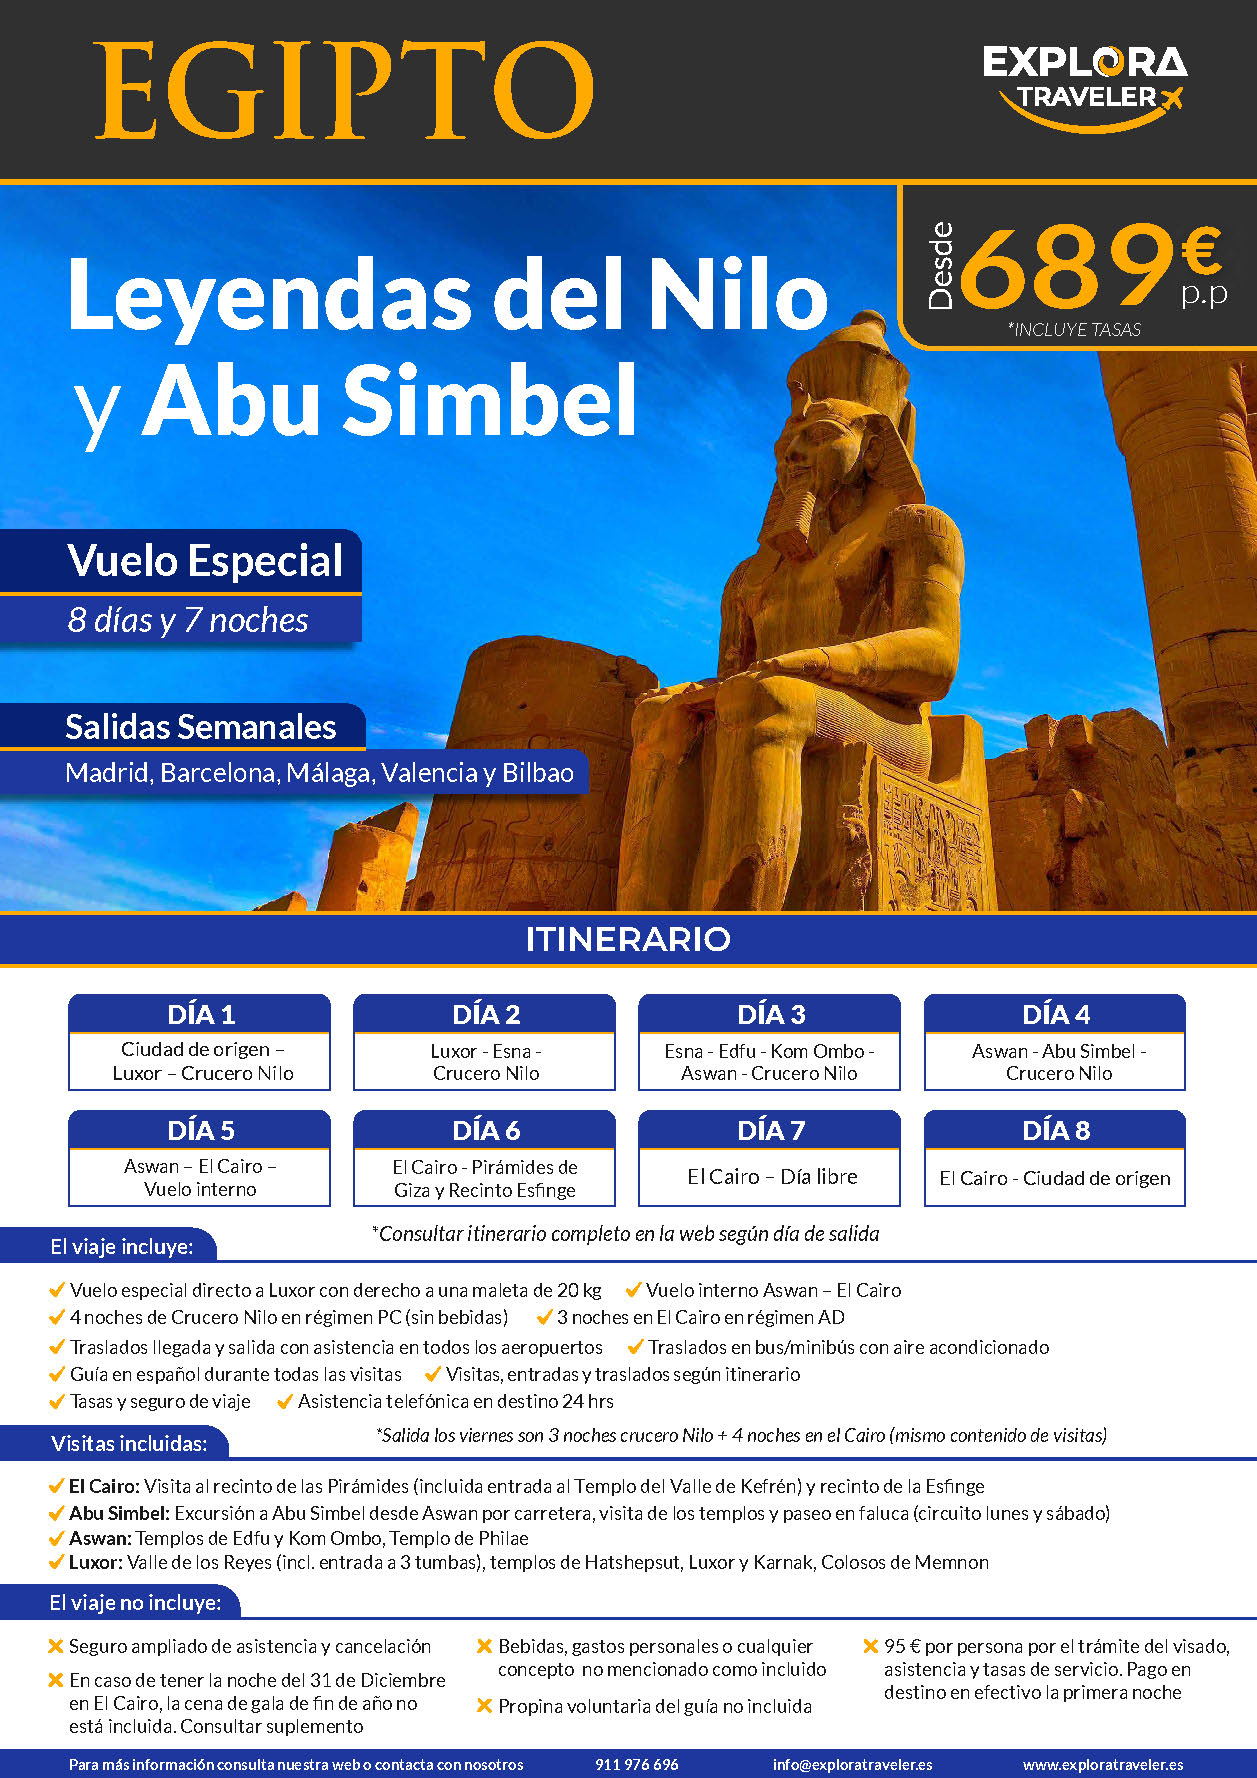 Oferta Explora Traveler Egipto Charter Leyendas del Nilo y Abu Simbel 8 dias salidas 2024 vuelo directo desde Madrid Barcelona Bilbao Malaga y Valencia